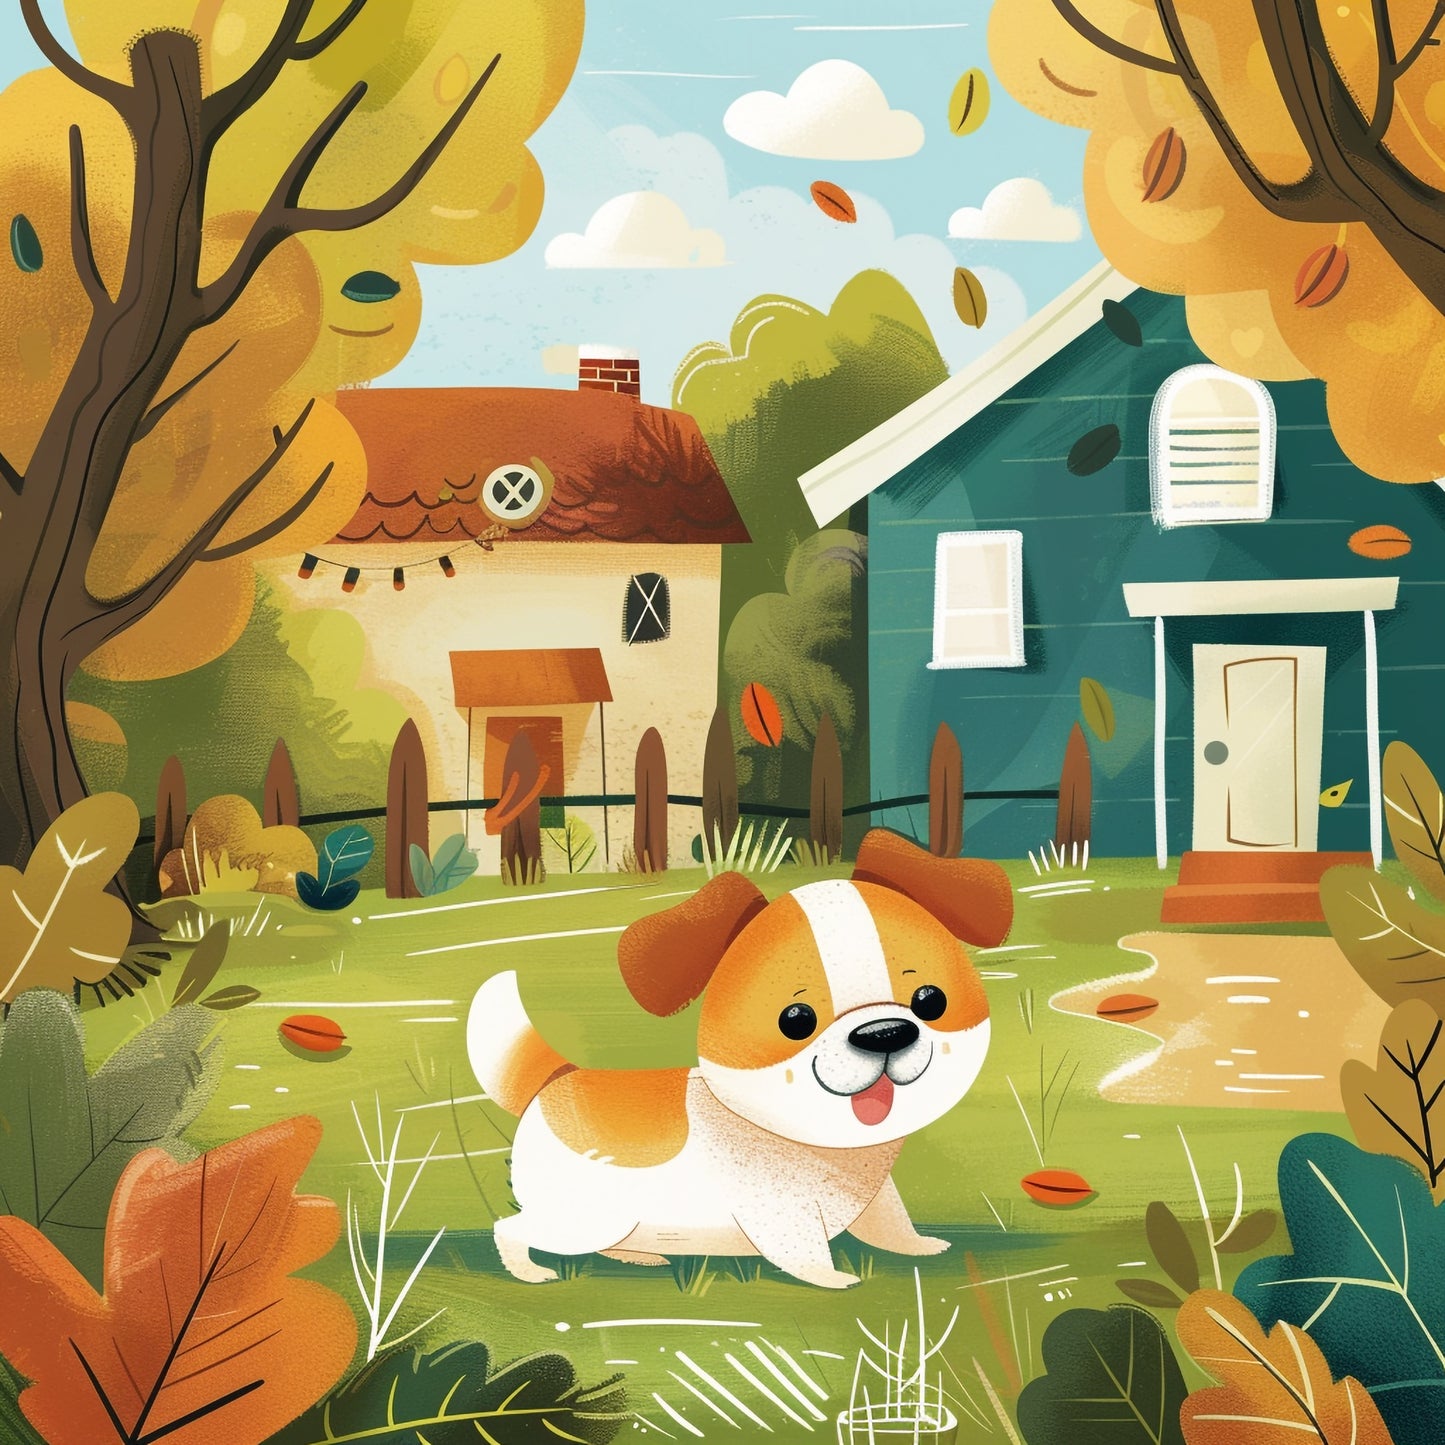 Children's Nursery Artwork With Cute, Friendly Dog in Autumn